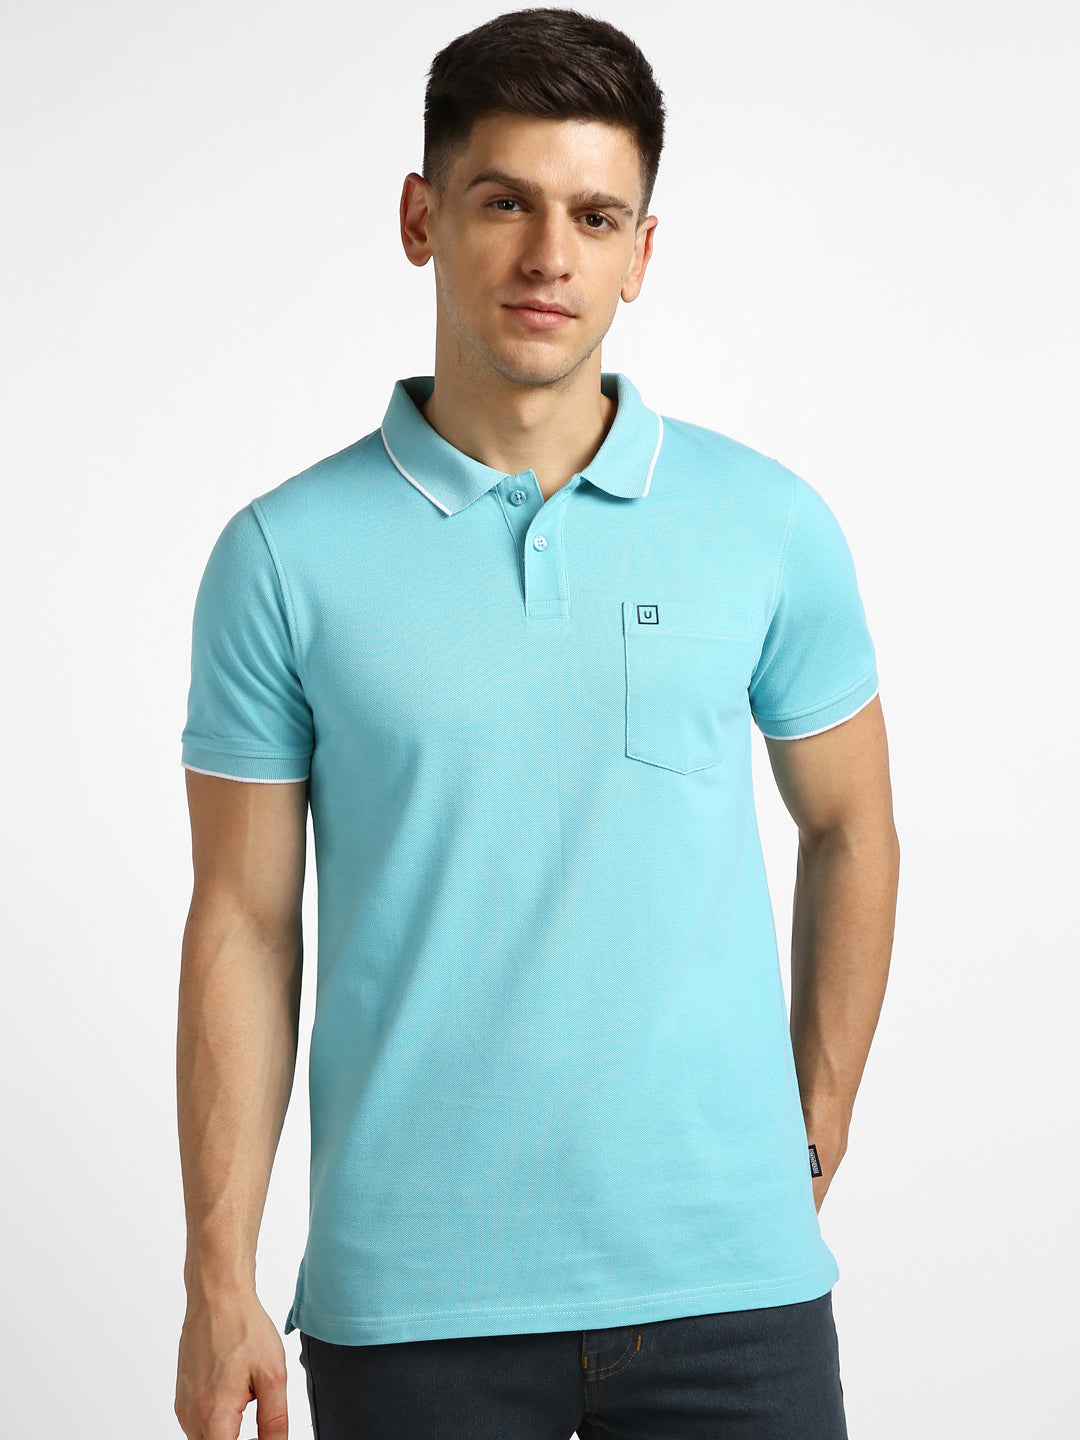 Urbano Fashion Men's Blue Solid Slim Fit Half Sleeve Cotton Polo T-Shirt